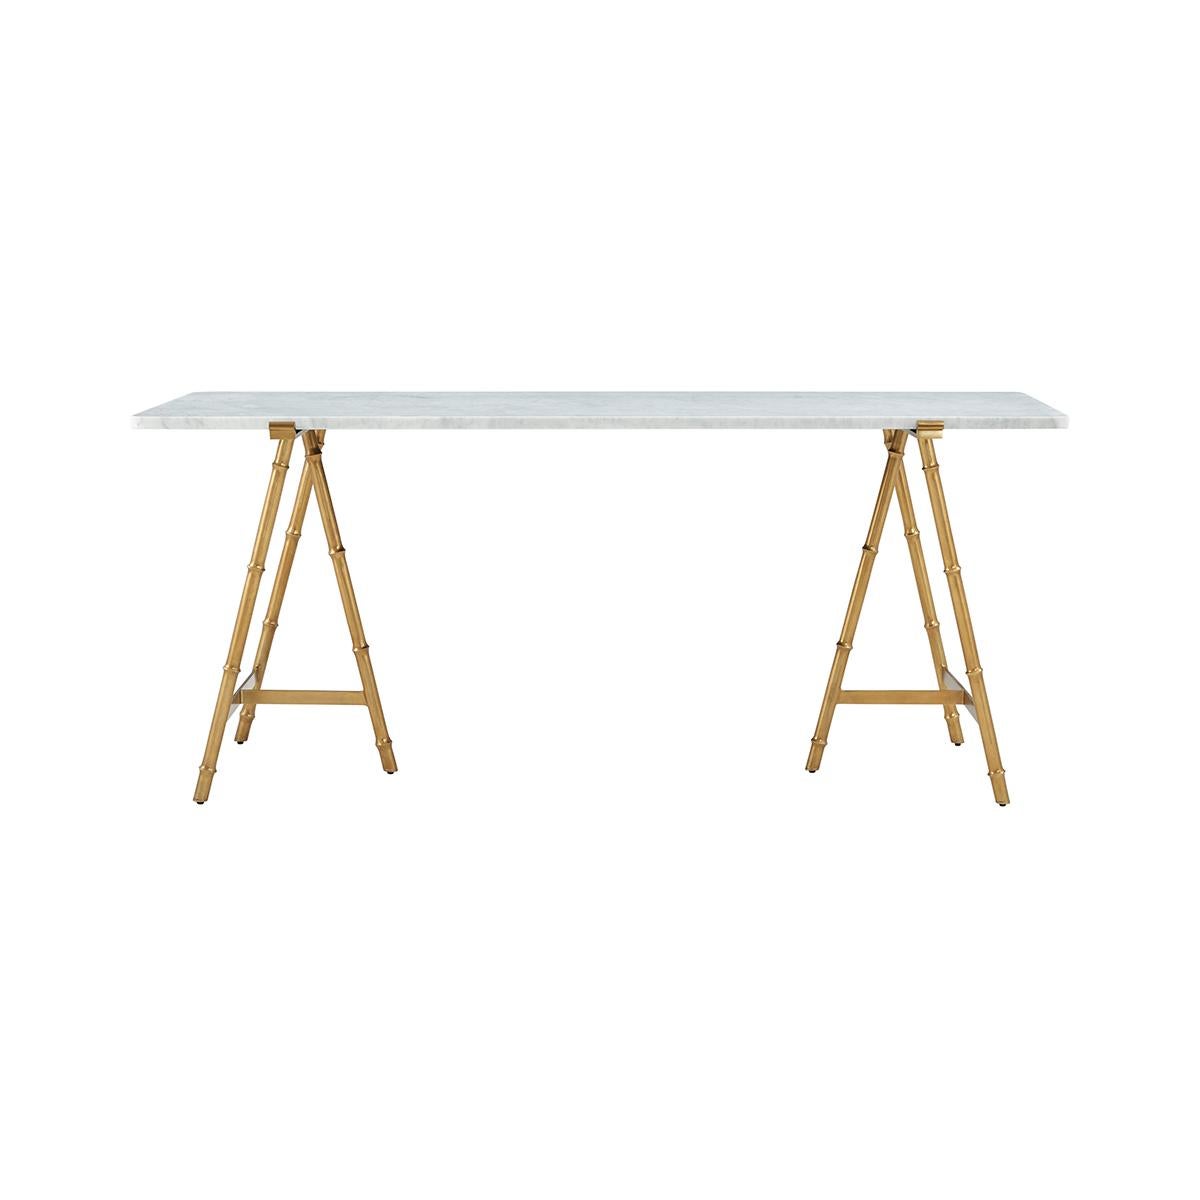 Des lignes élancées forment un design léger et aérien dans cette table moderne. Une gracieuse combinaison de marbre blanc bianco au sommet d'une base organique en faux bois dans une finition bronze satiné.

Dimensions : 72